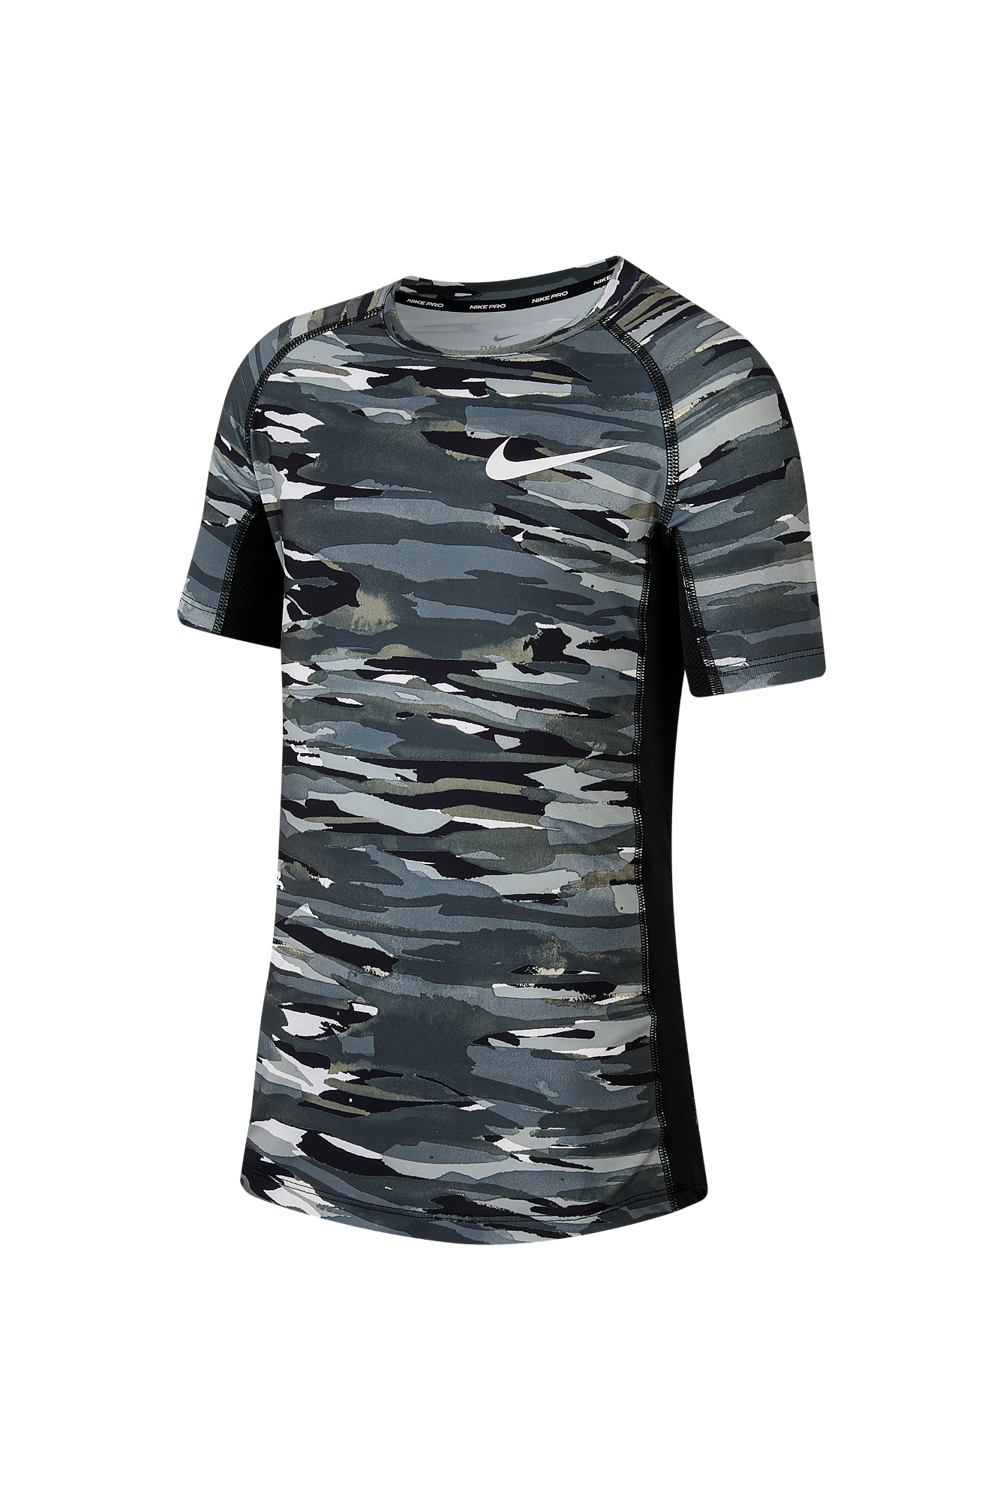 Παιδικά/Boys/Ρούχα/Αθλητικά NIKE - Παιδικό t-shirt NIKE Pro μαύρο